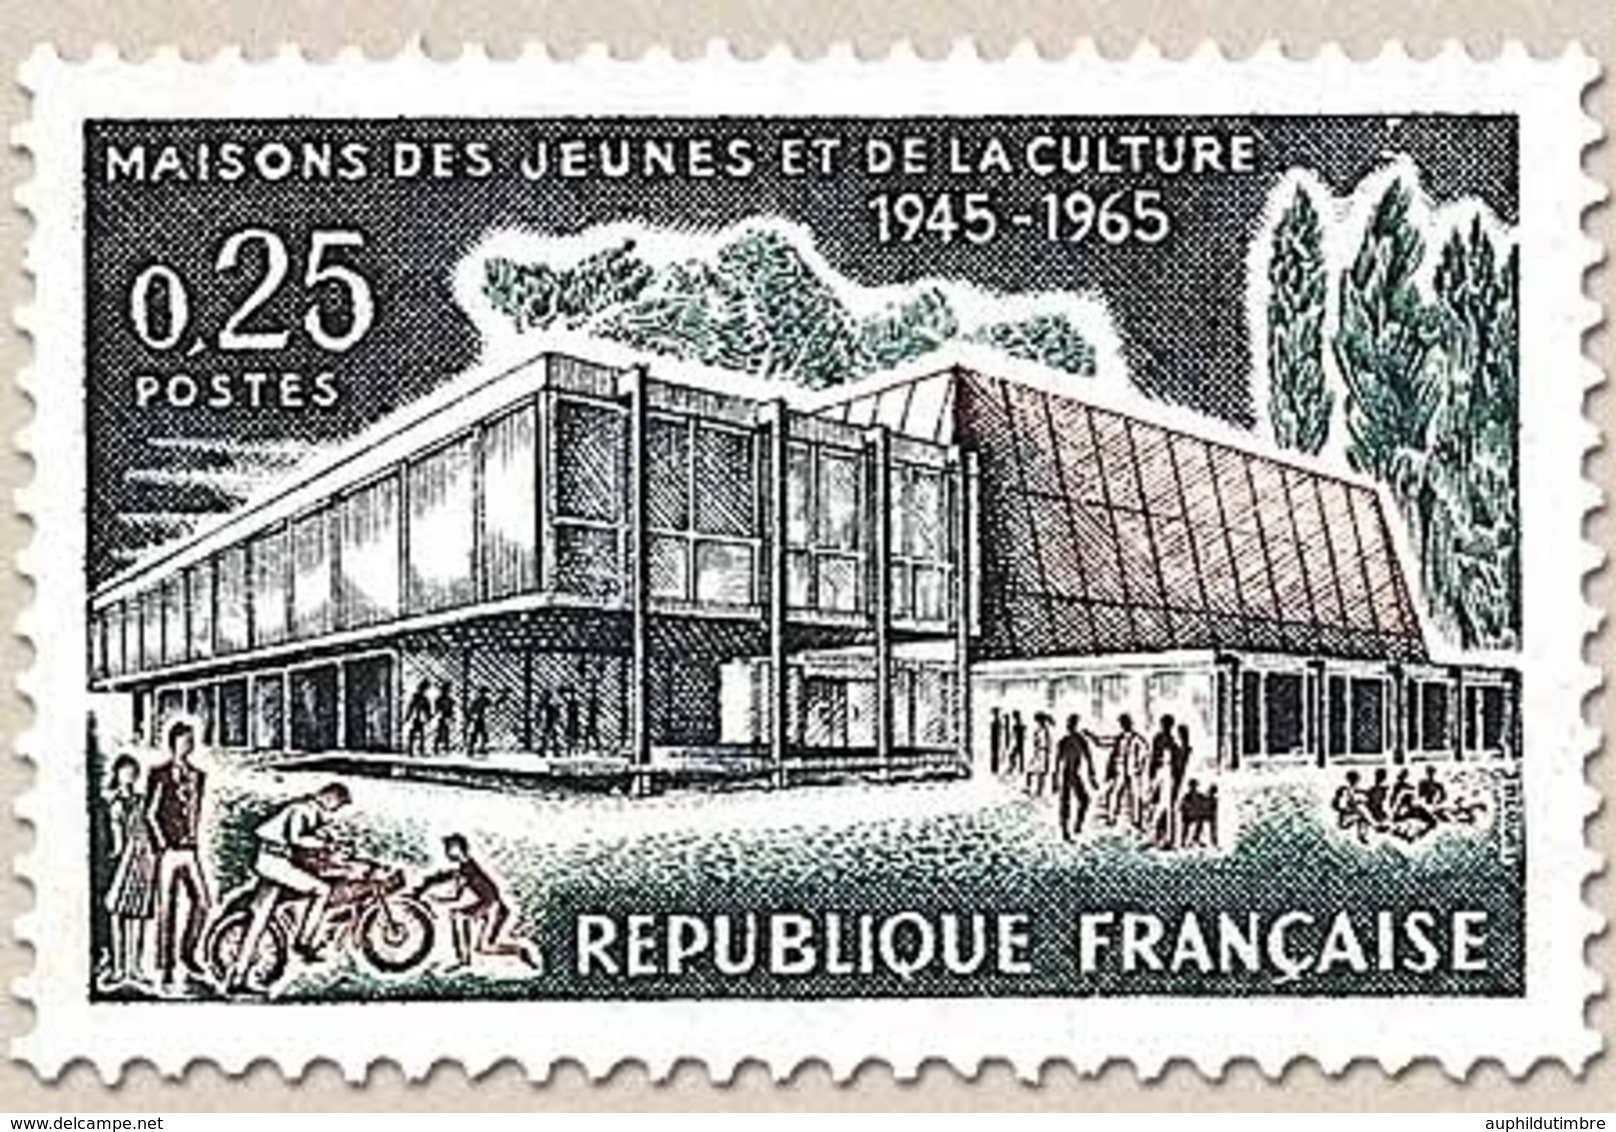 Maisons Des Jeunes Et De La Culture. Troyes : Maison Des Jaunes Et De La Culture. 25c. Y1448 - Ongebruikt